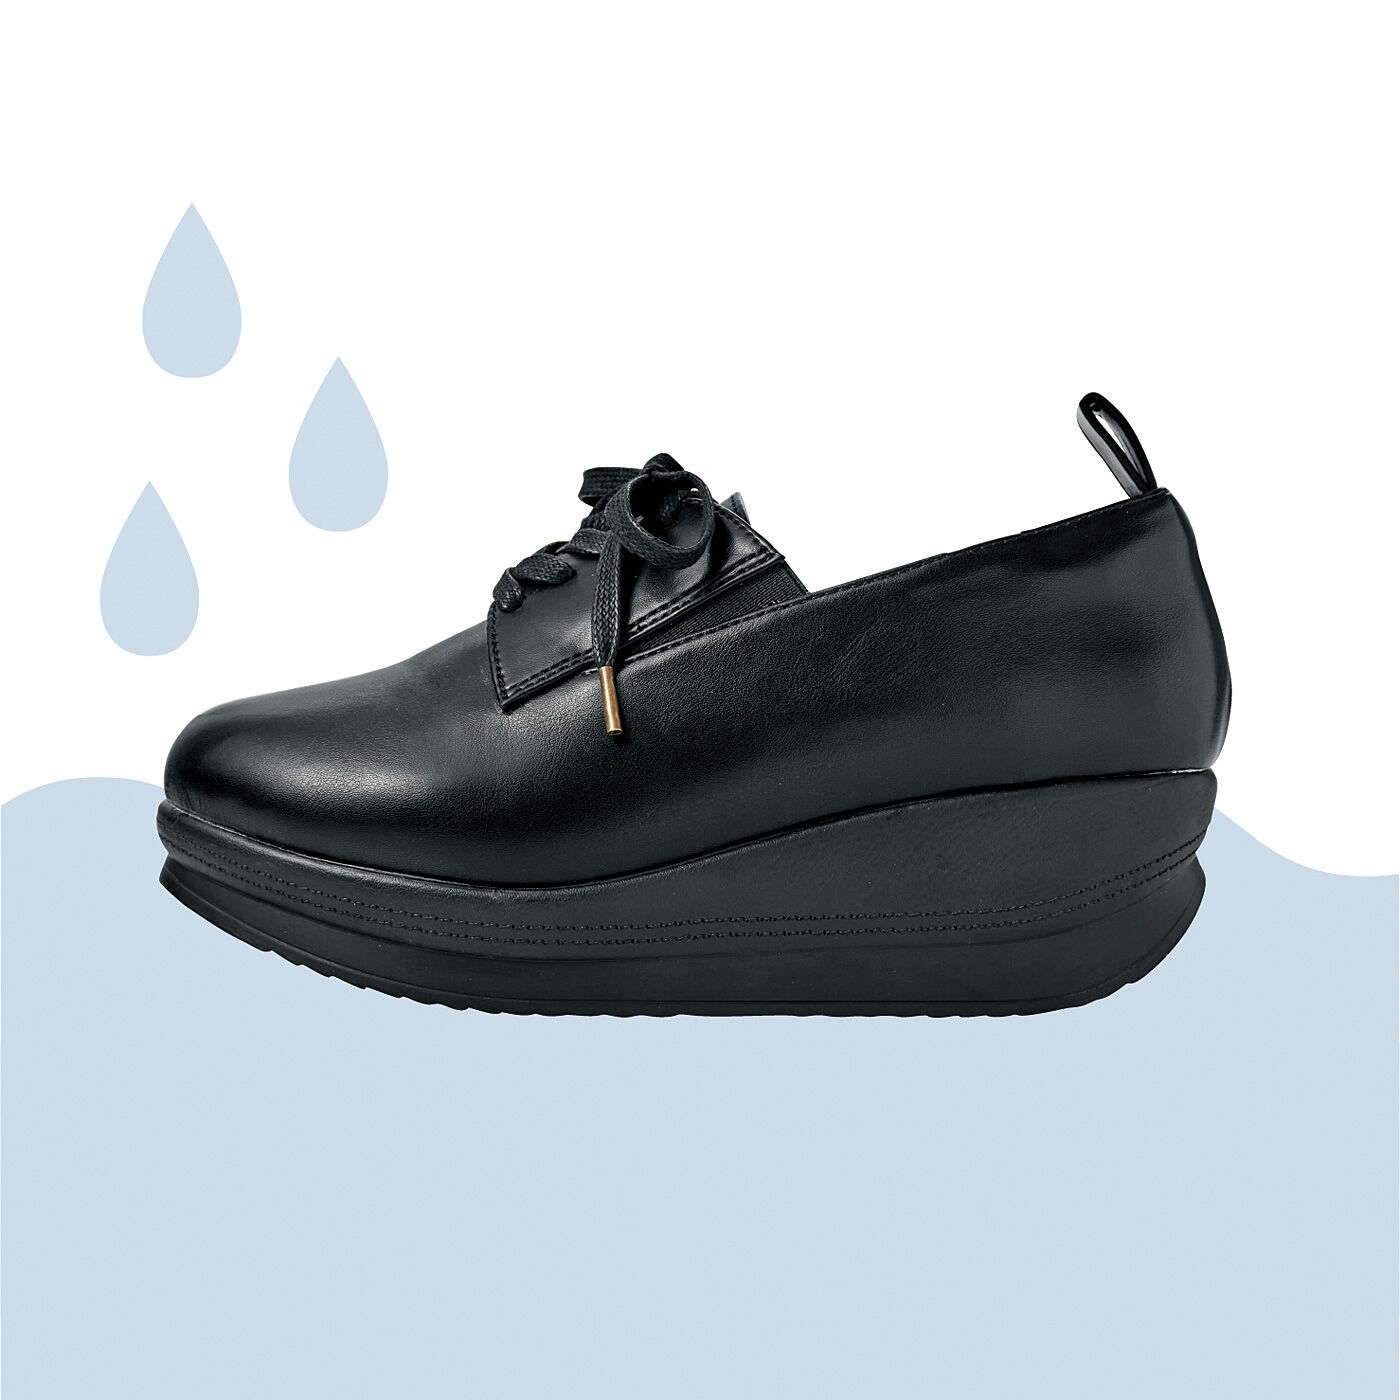 Real Stock|UP.de　振り子ソールでスイスイ歩ける　晴雨兼用スタイルアップシューズ〈ブラック〉|靴底まわりに防水テープと防水糊を使用。雨のしみ込みをガードします。